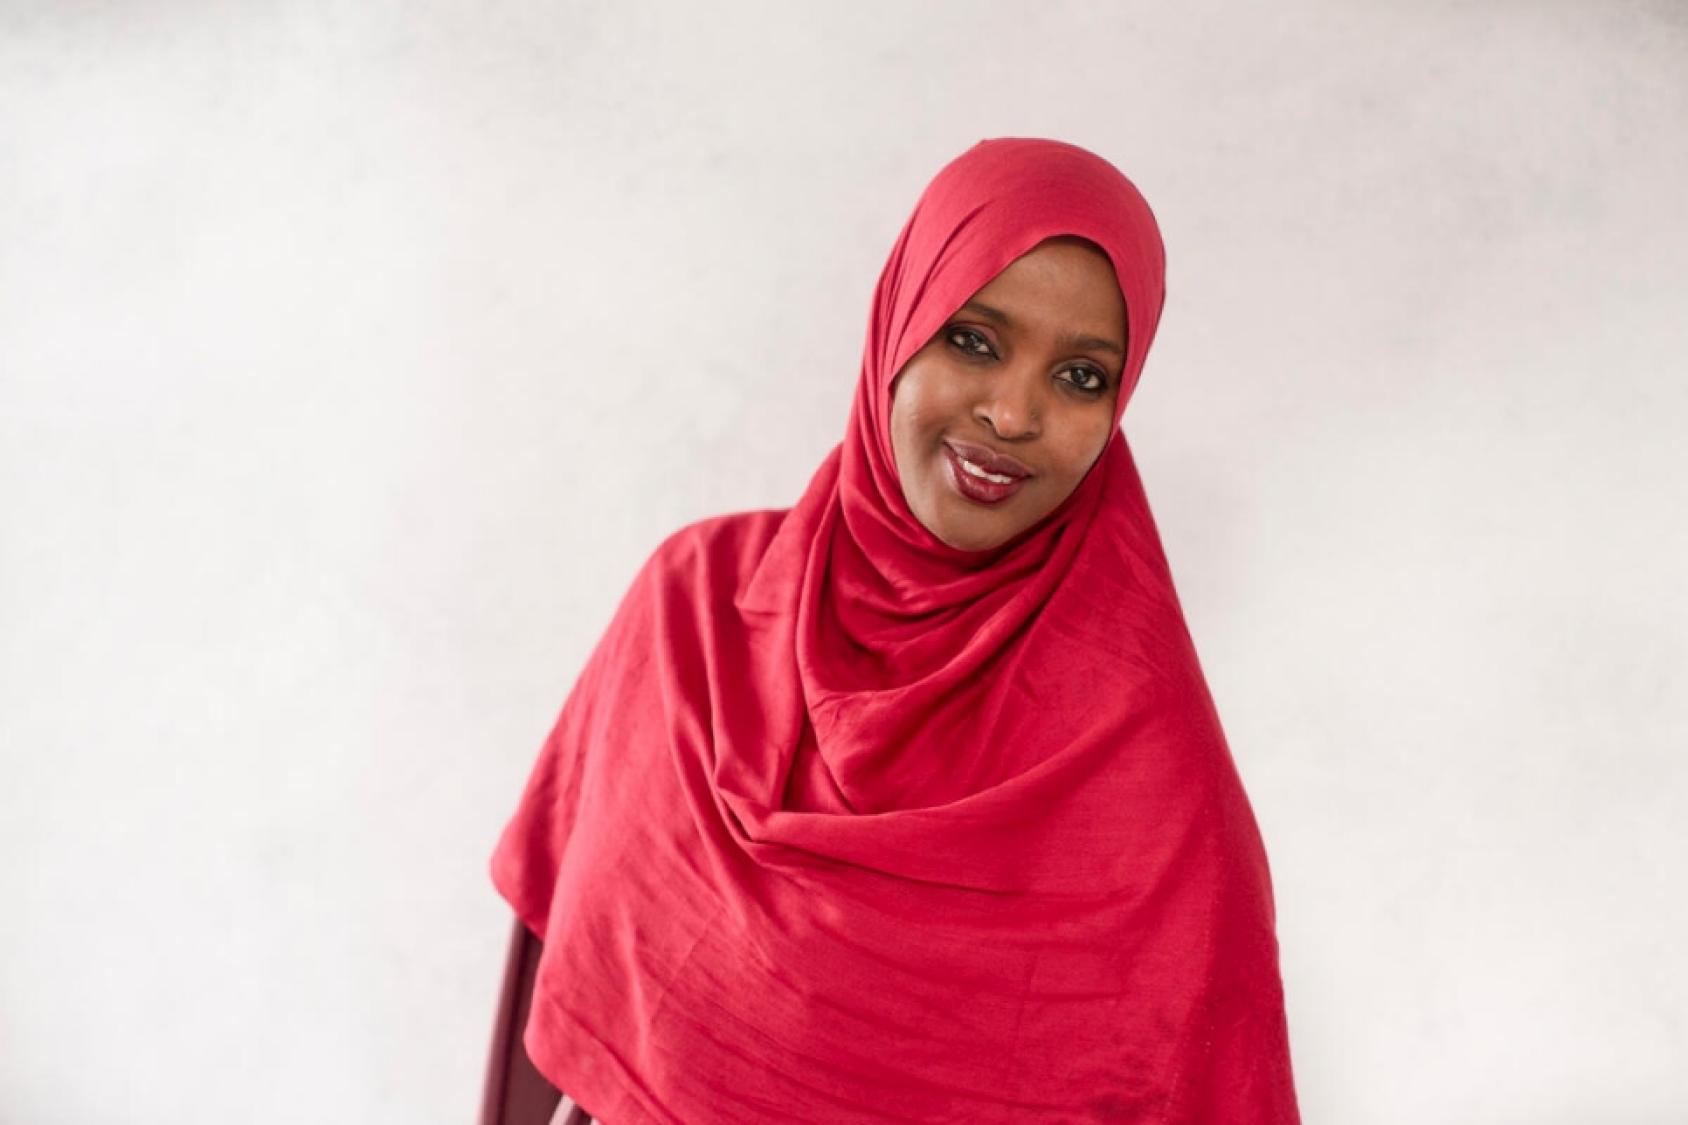 Une femme somalienne portant un hijab rouge regarde l'objectif en souriant, la tête légèrement penchée vers sa gauche.